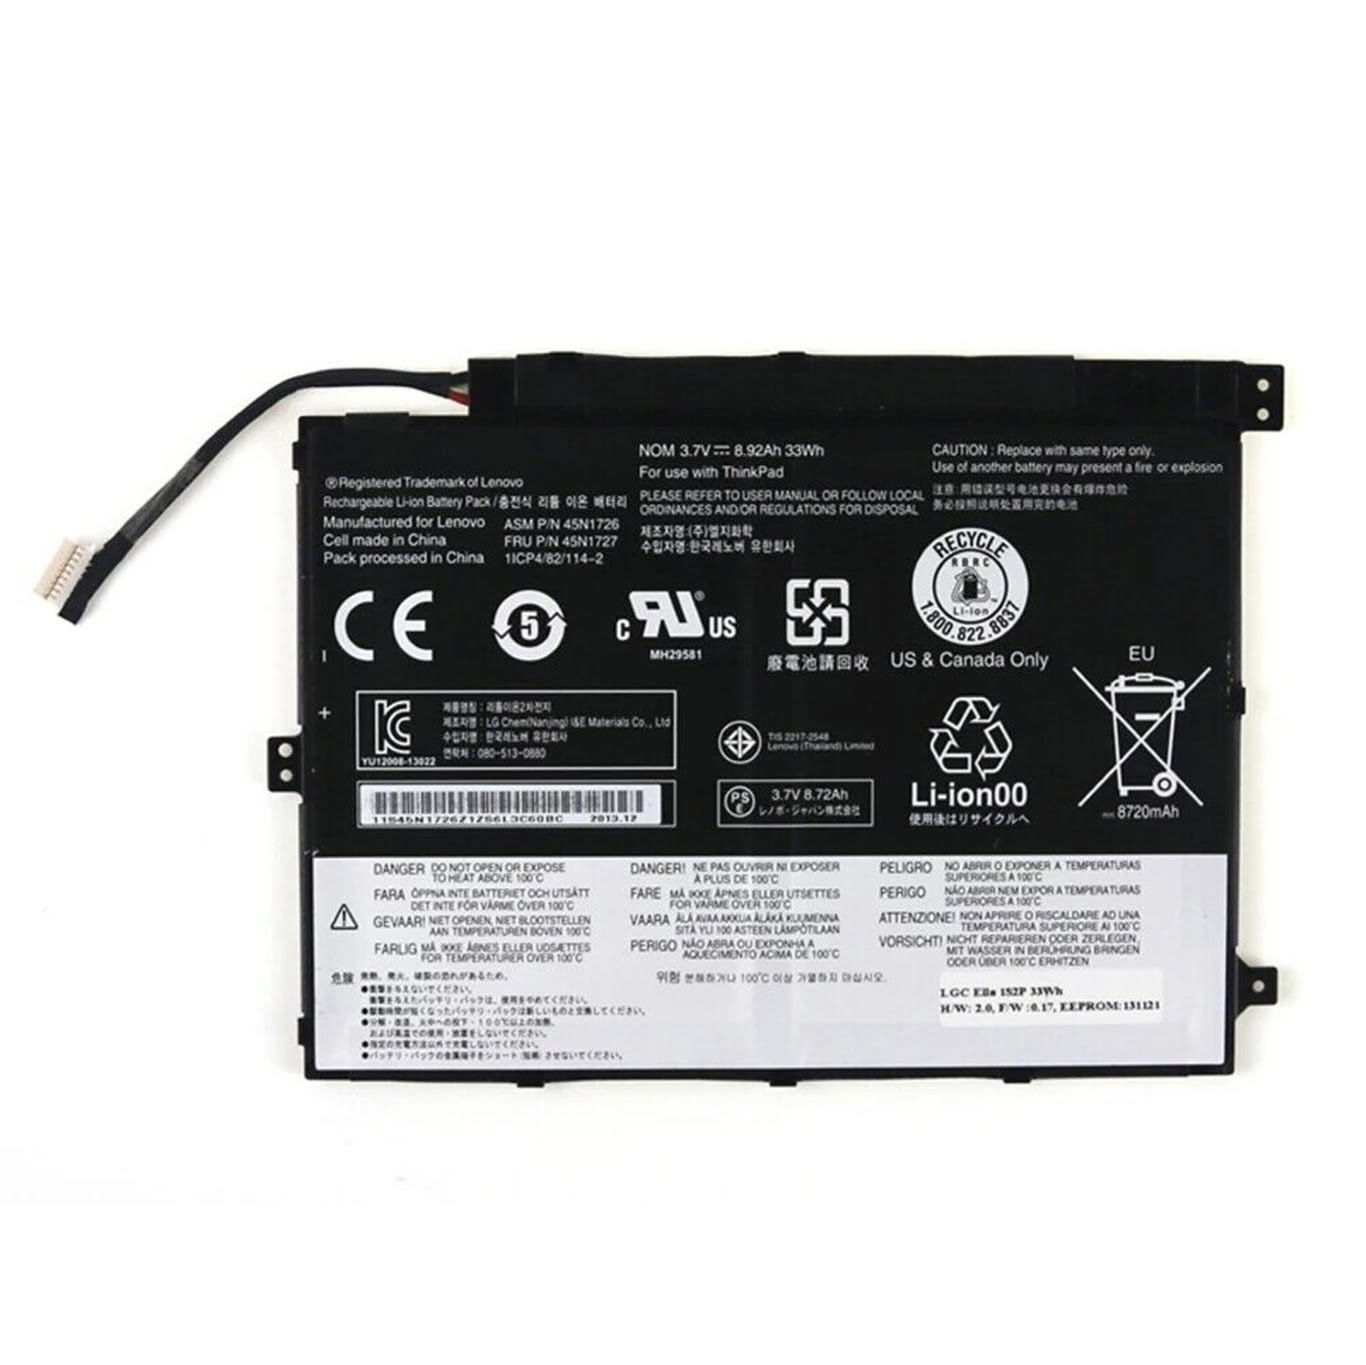 Lenovo 45n1726, 45n1727 Laptop Battery For Thinkpad 10 20c3-001qau, Thinkpad 10 20e3-0018au replacement